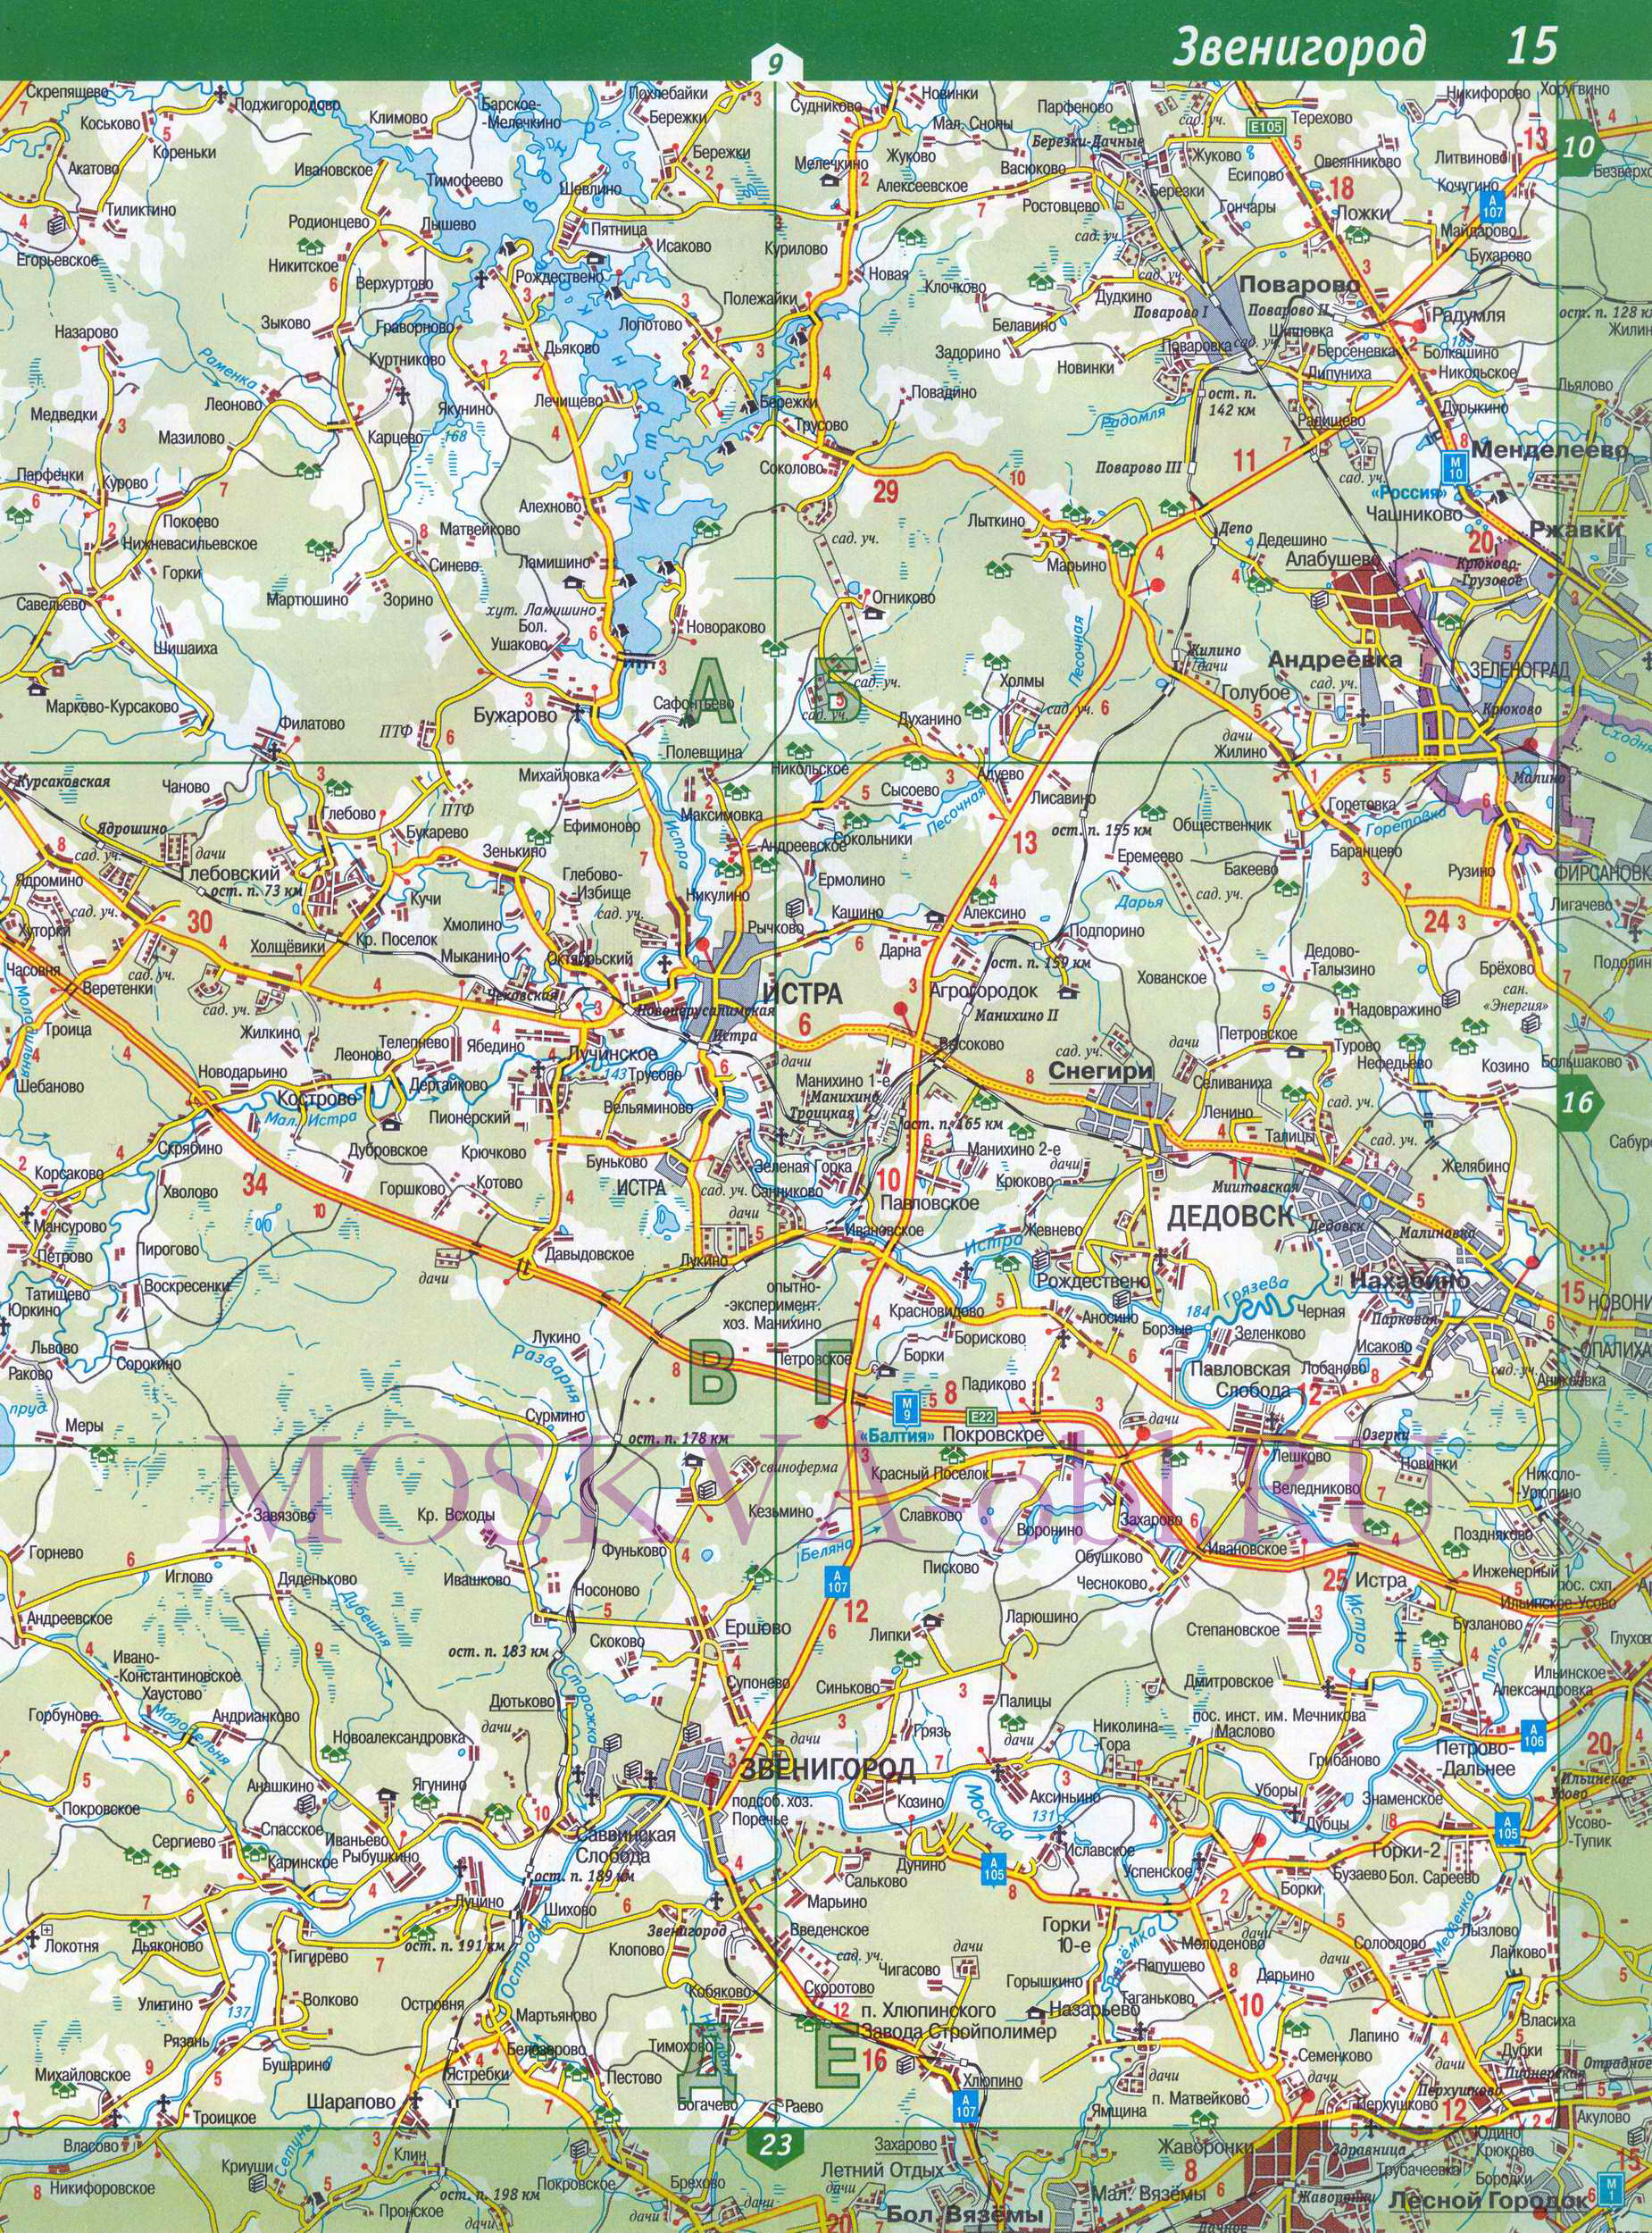 Карта Московской области. Московская область - подробная топографическая карта масштаба 1см:2км, B1 - 